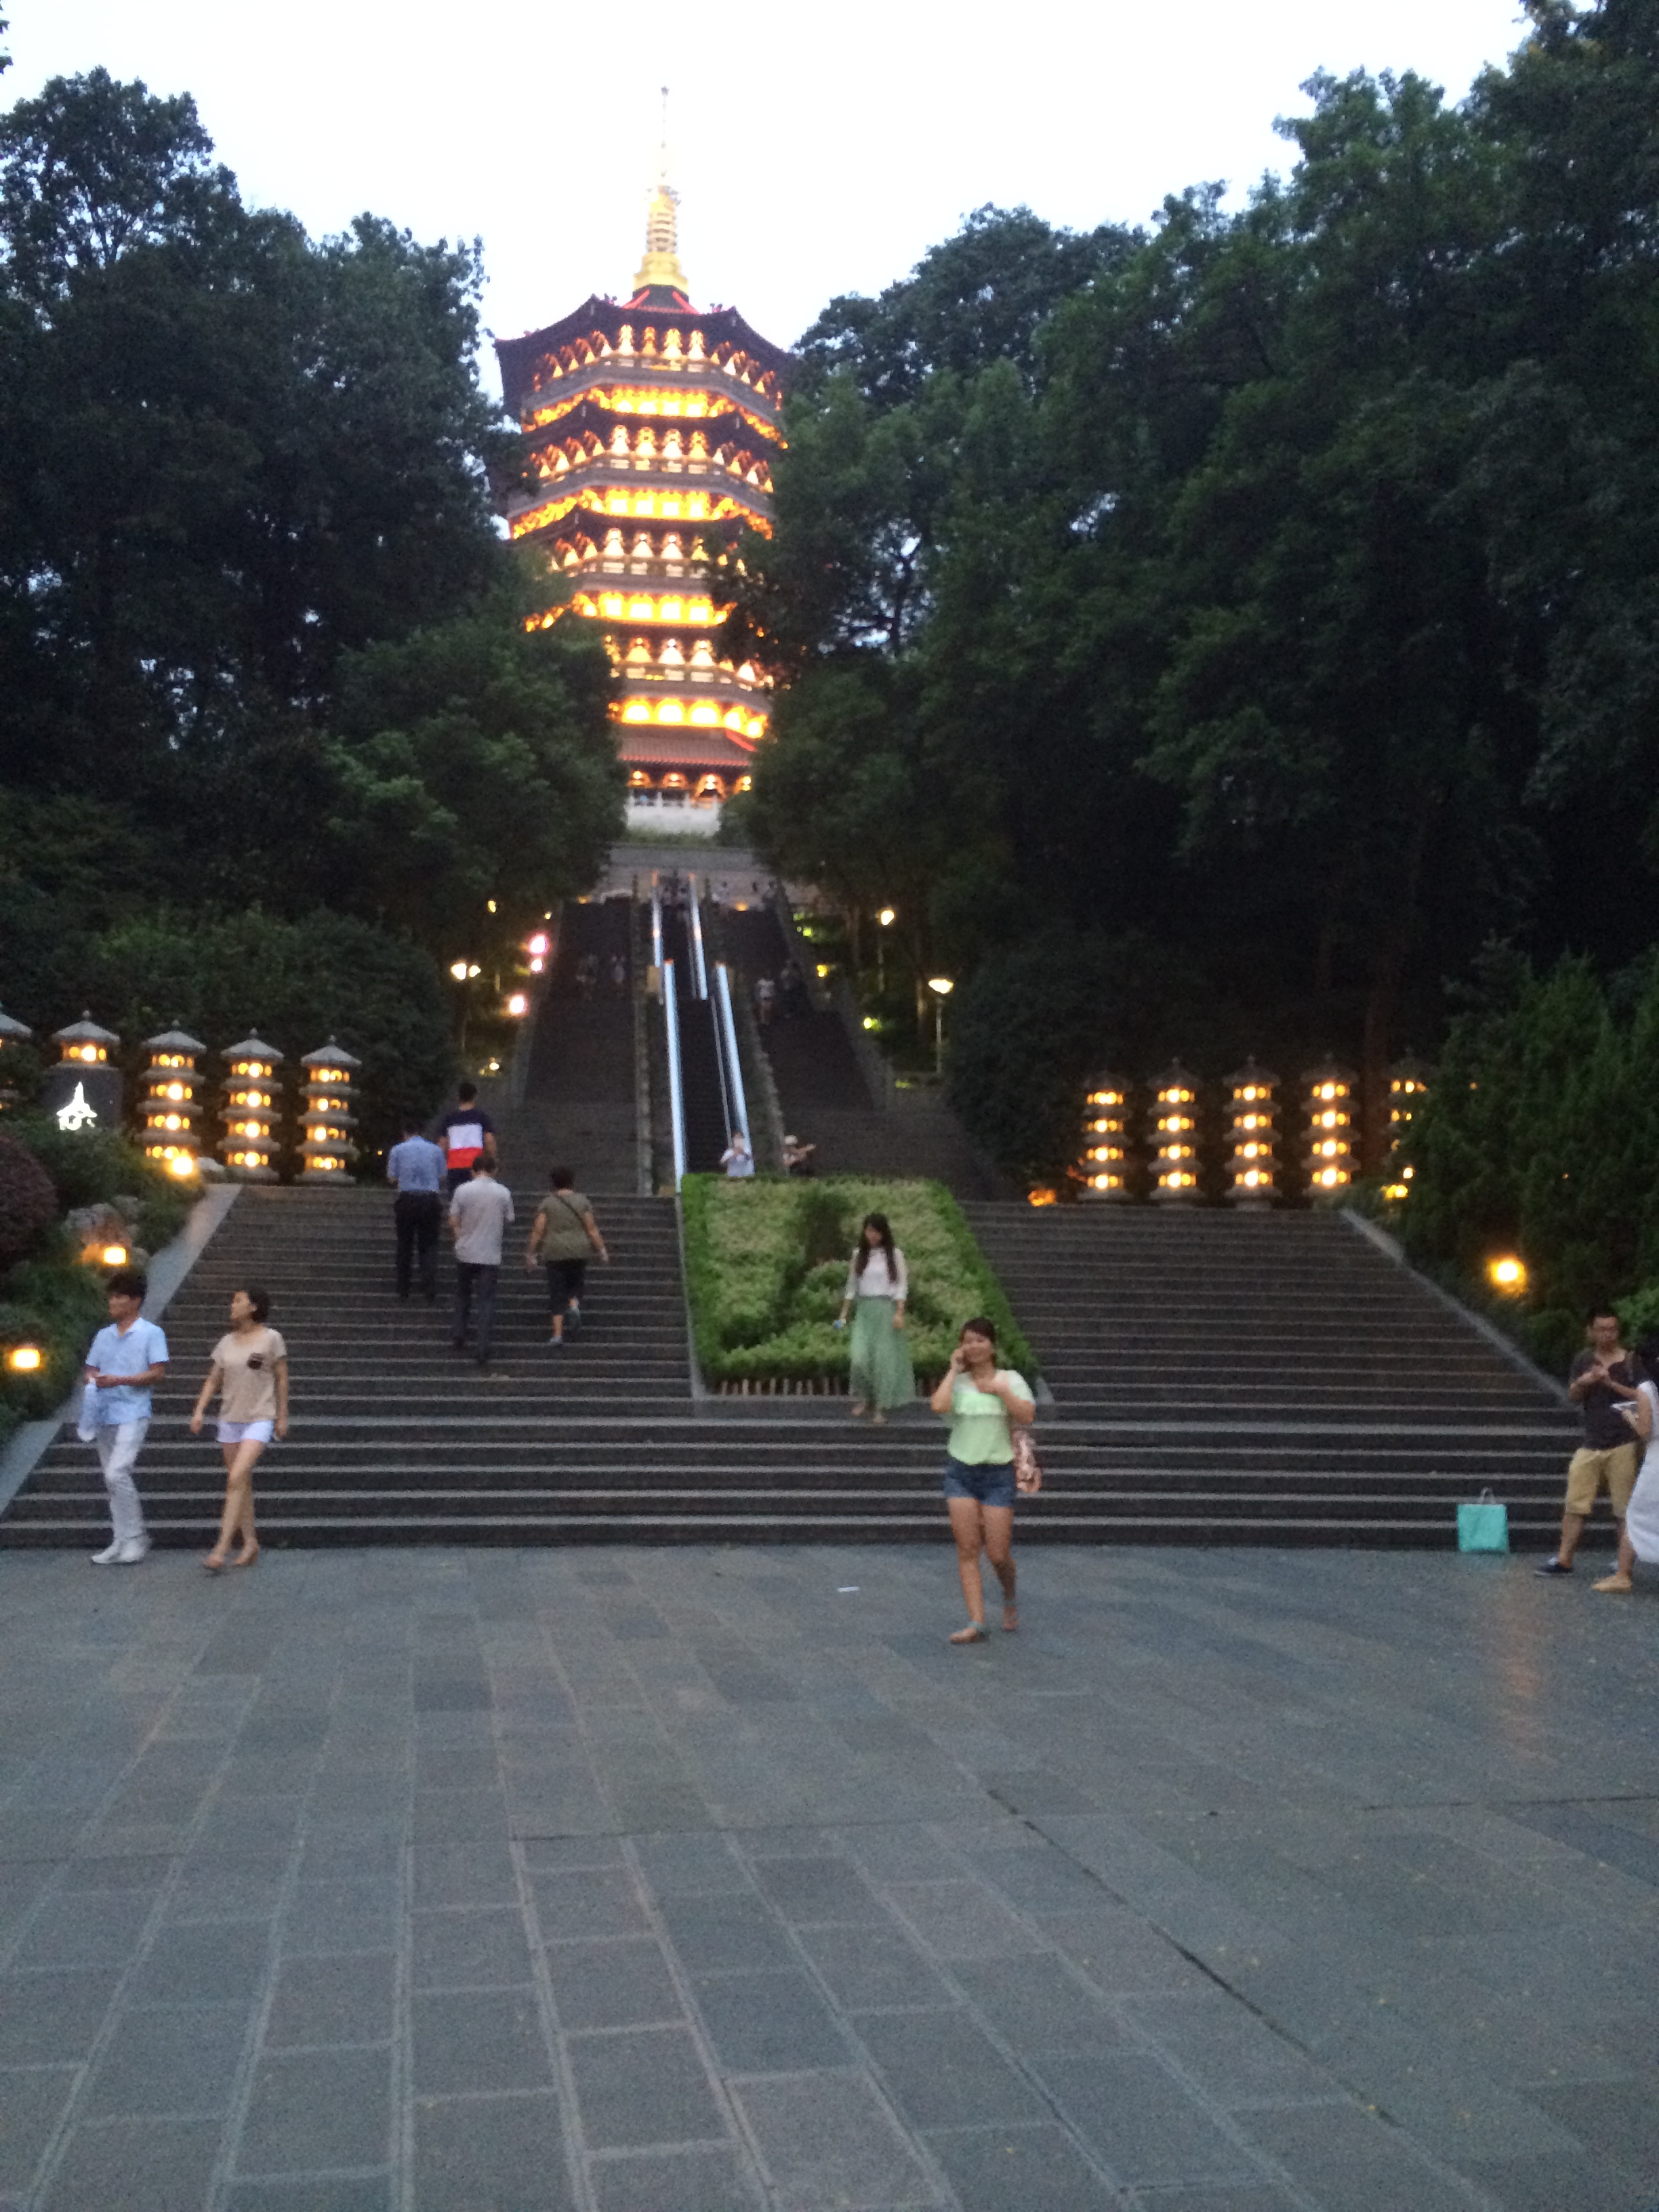 【携程攻略】杭州雷峰塔景点,印象中的雷峰塔是因为相传中的白蛇传优美传说。盛夏的傍晚来到雷峰塔…